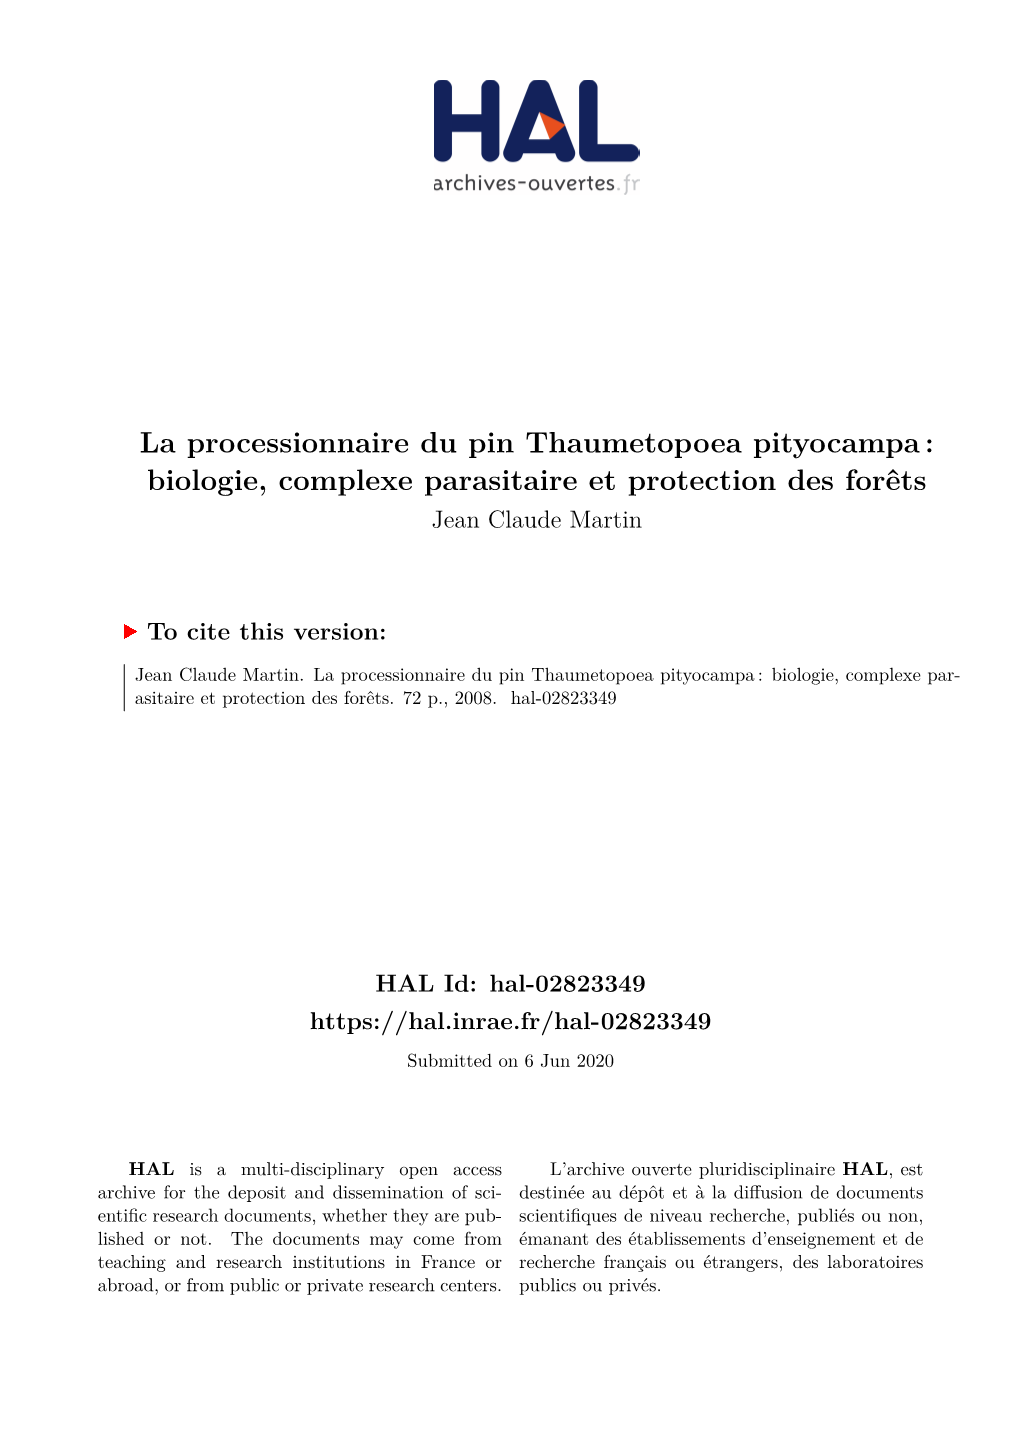 La Processionnaire Du Pin Thaumetopoea Pityocampa : Biologie, Complexe Parasitaire Et Protection Des Forêts Jean Claude Martin